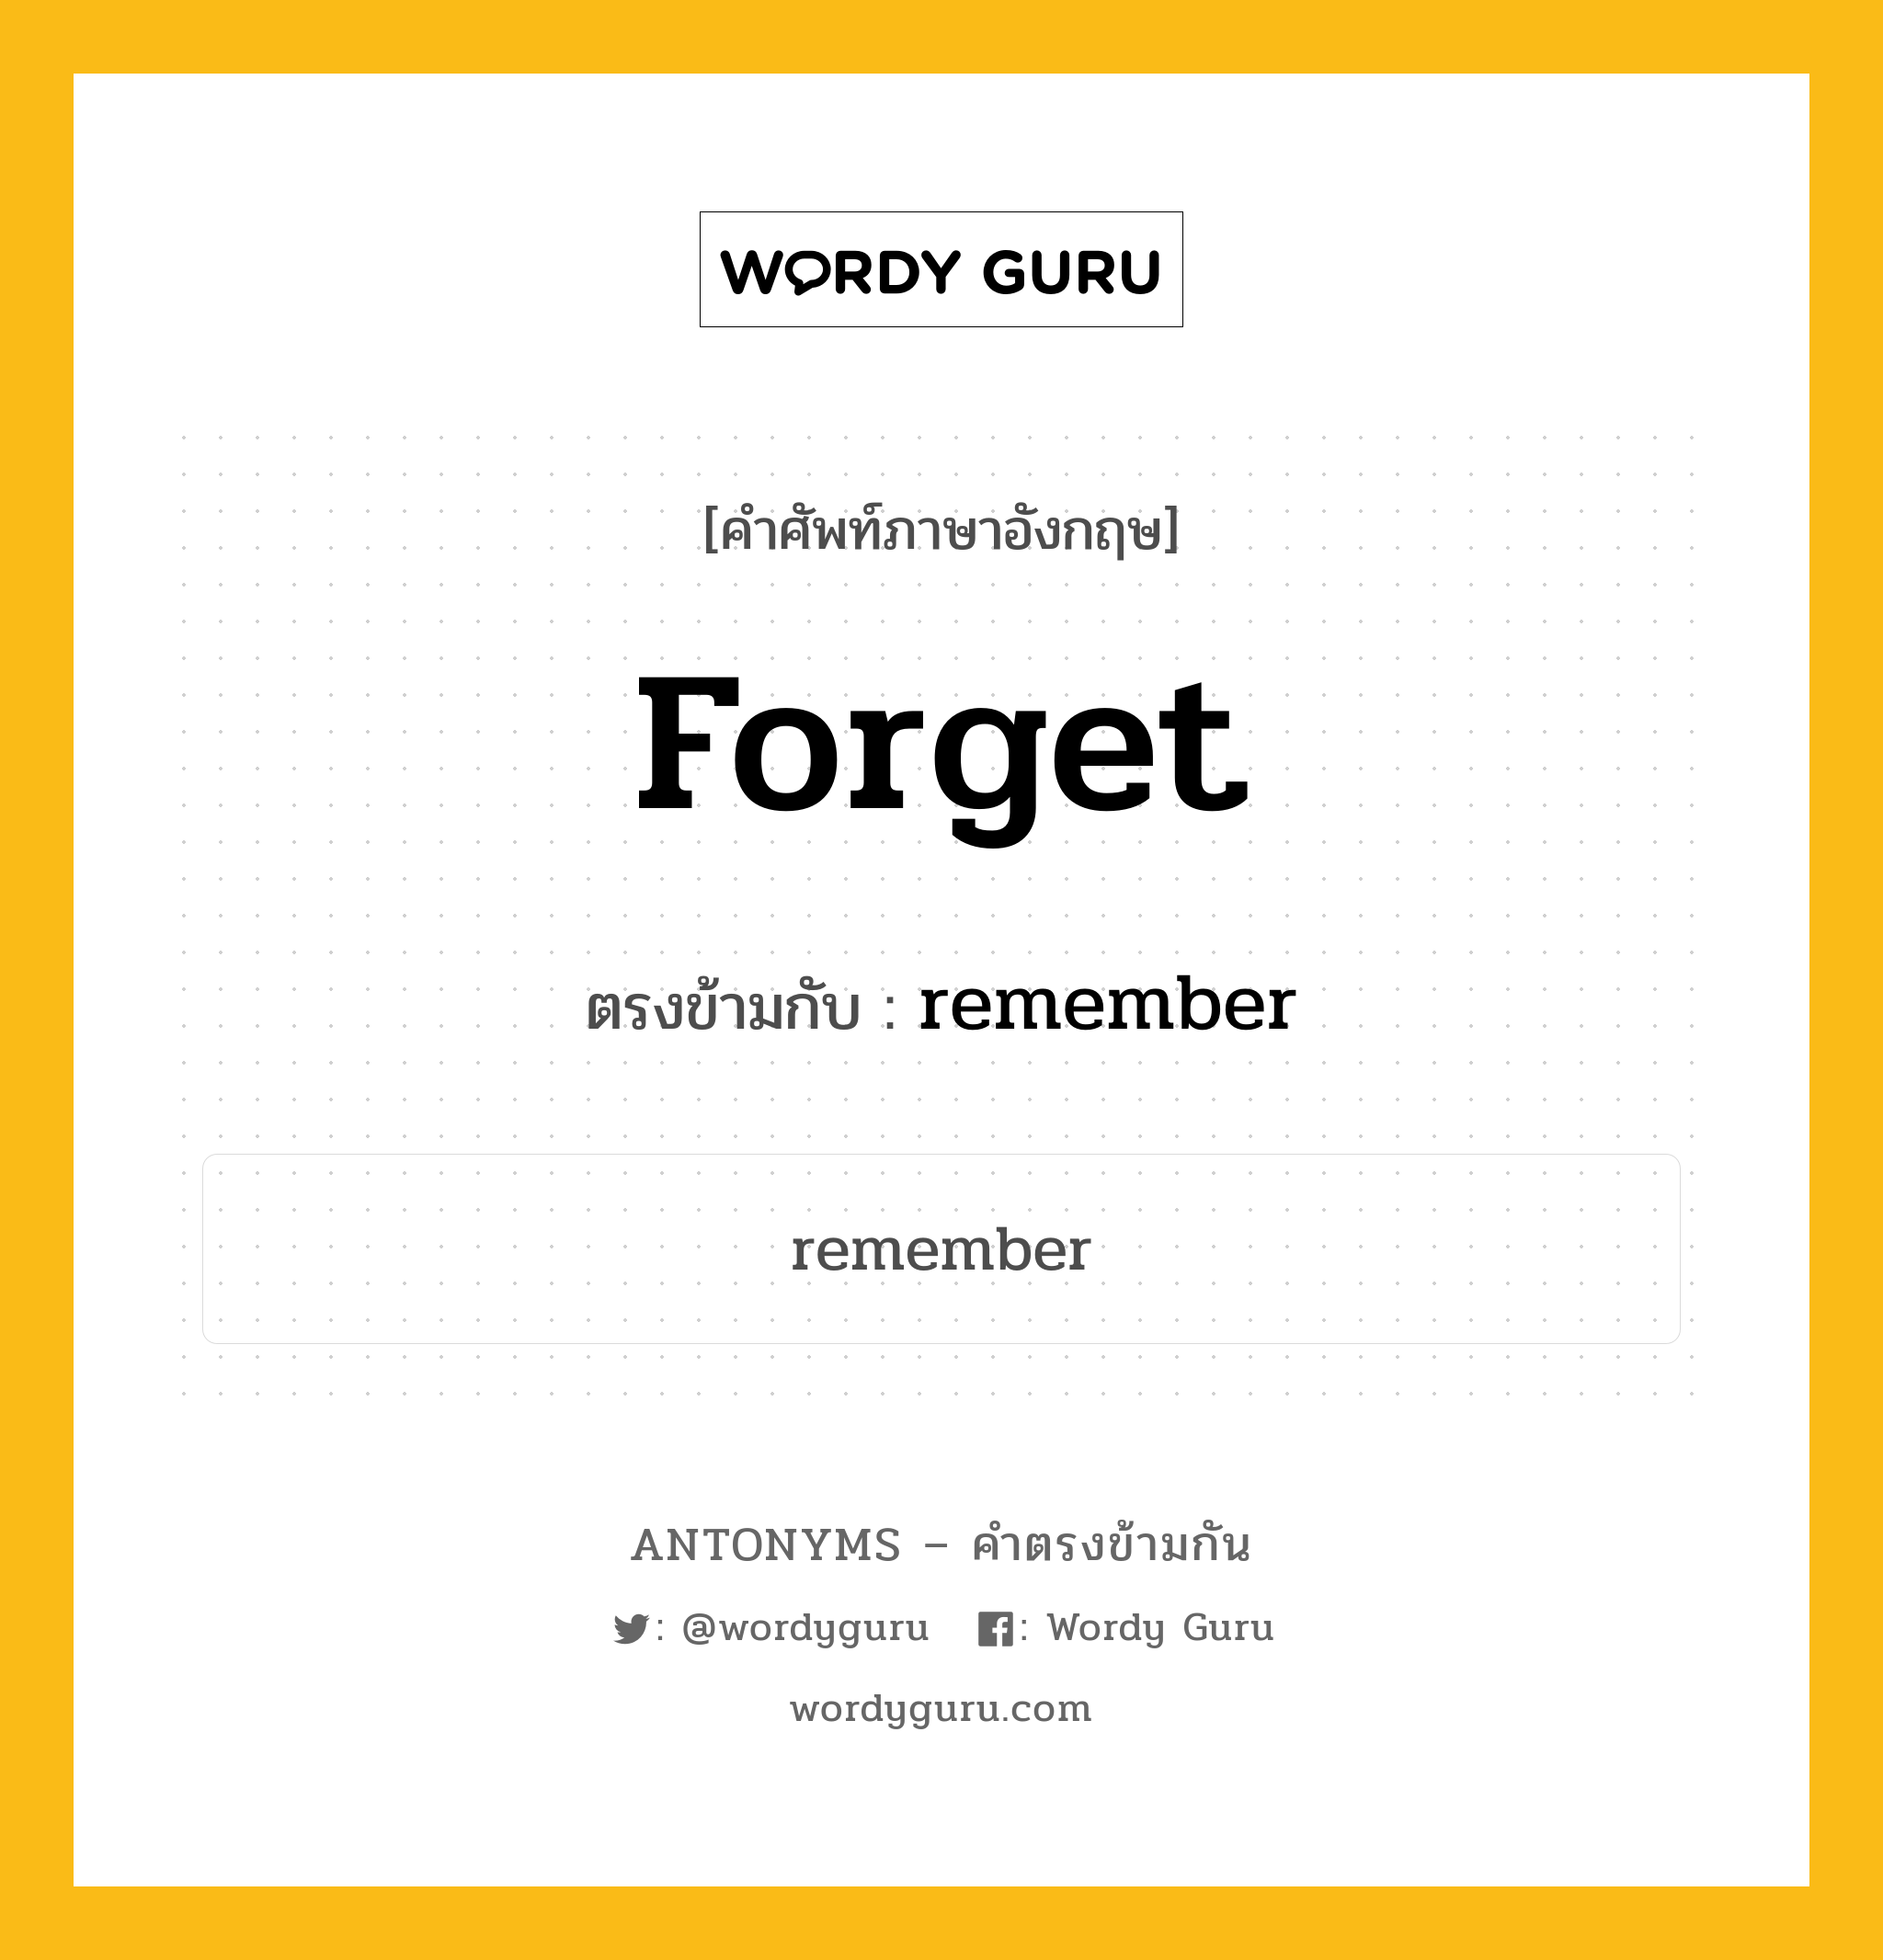 forget เป็นคำตรงข้ามกับคำไหนบ้าง?, คำศัพท์ภาษาอังกฤษ forget ตรงข้ามกับ remember หมวด remember